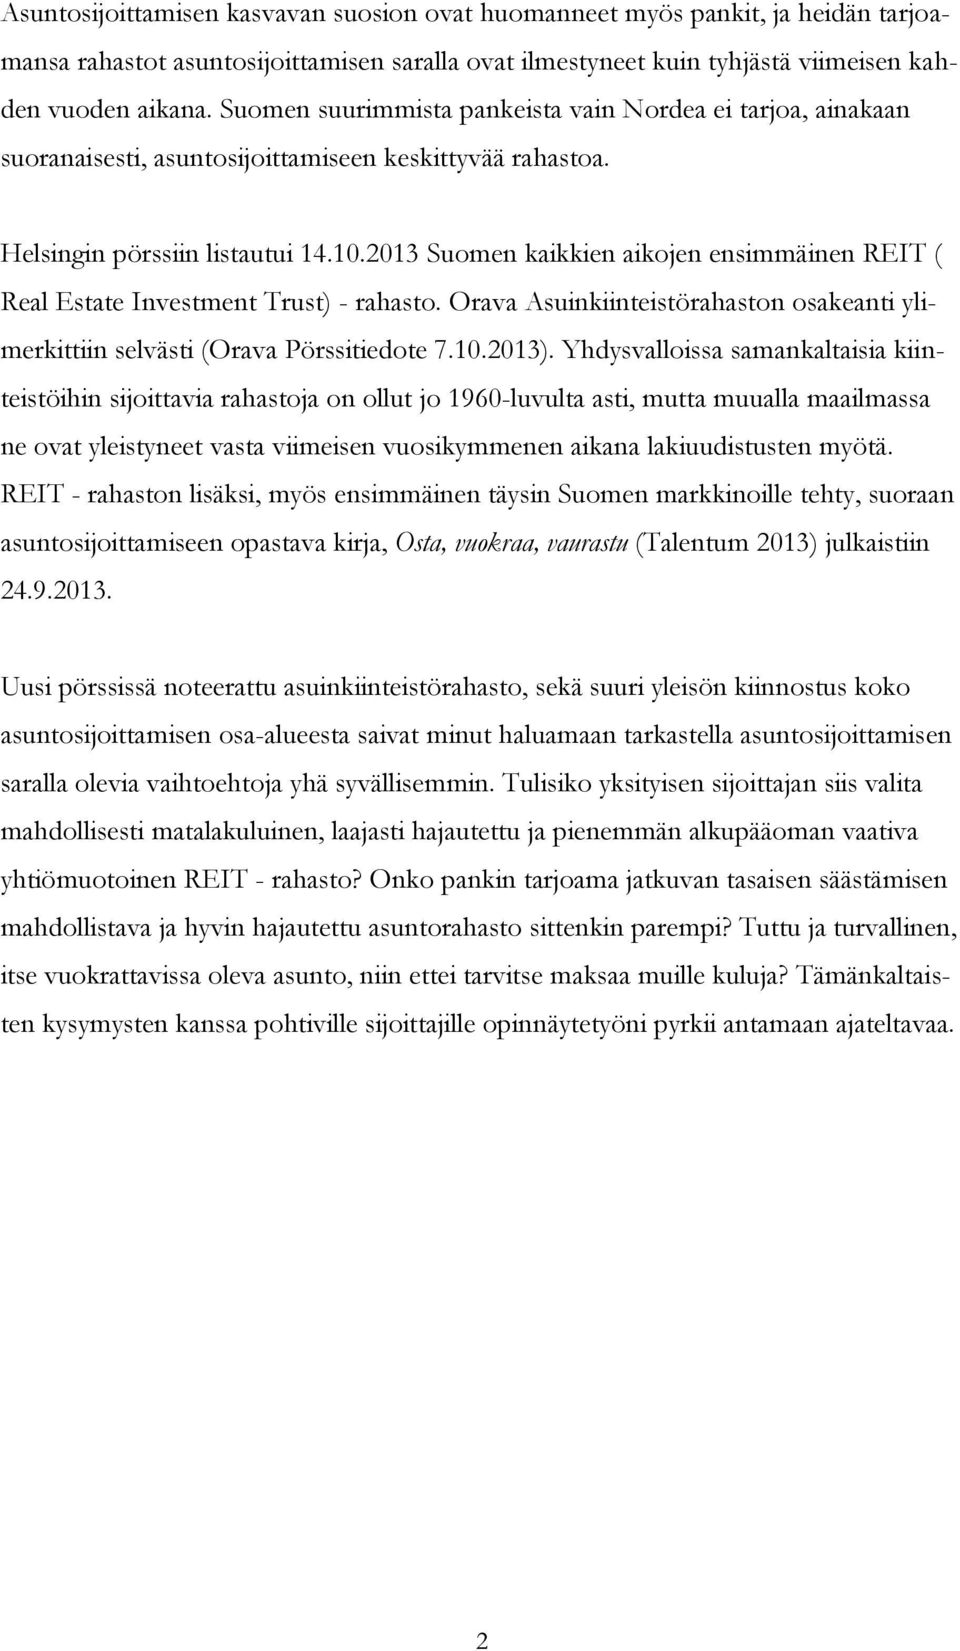 2013 Suomen kaikkien aikojen ensimmäinen REIT ( Real Estate Investment Trust) - rahasto. Orava Asuinkiinteistörahaston osakeanti ylimerkittiin selvästi (Orava Pörssitiedote 7.10.2013).